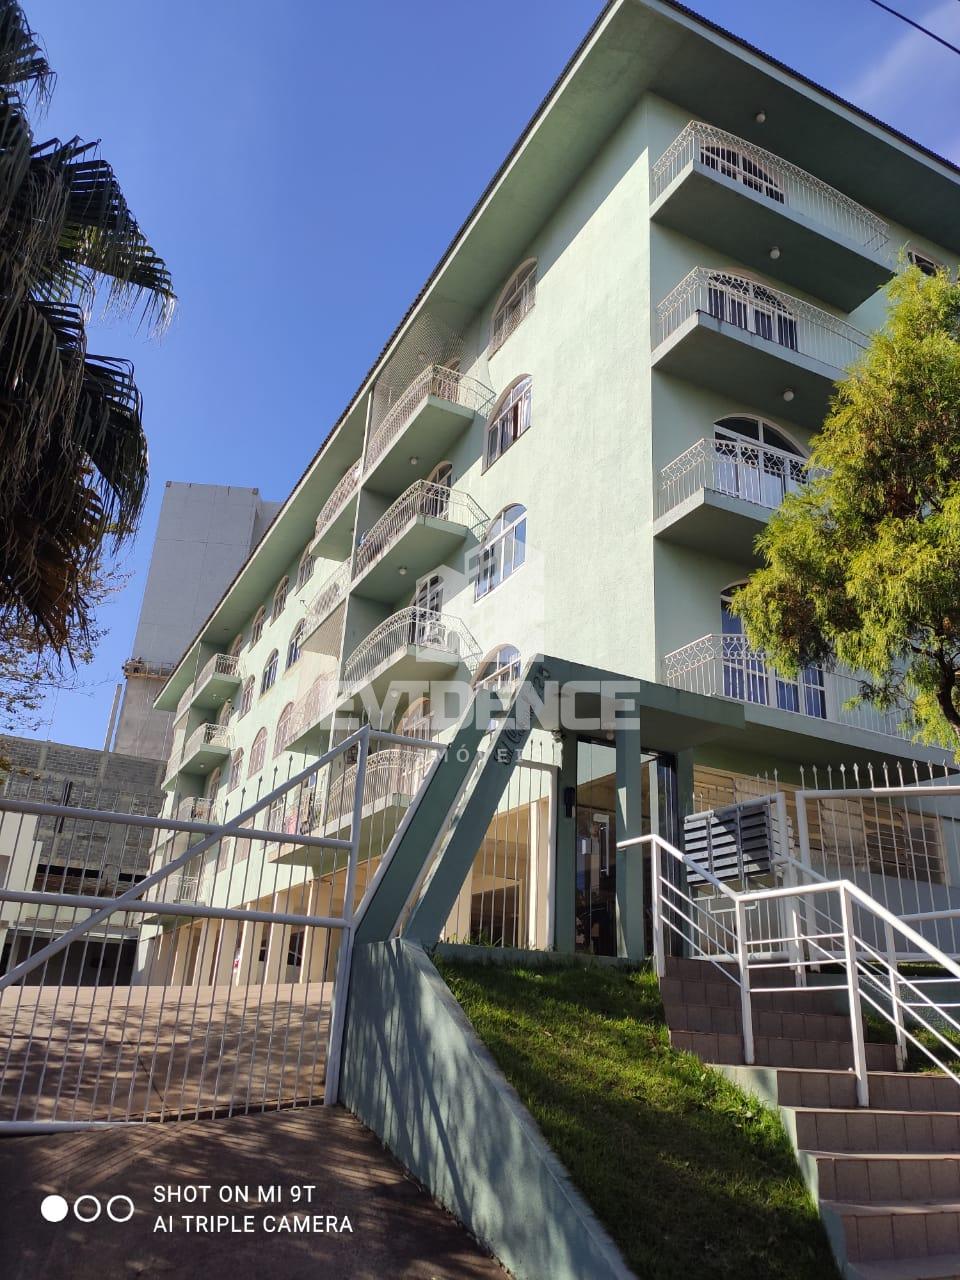 Apartamento com 2 dormitórios à venda,150.79m², CENTRO, PATO BRANCO - PR